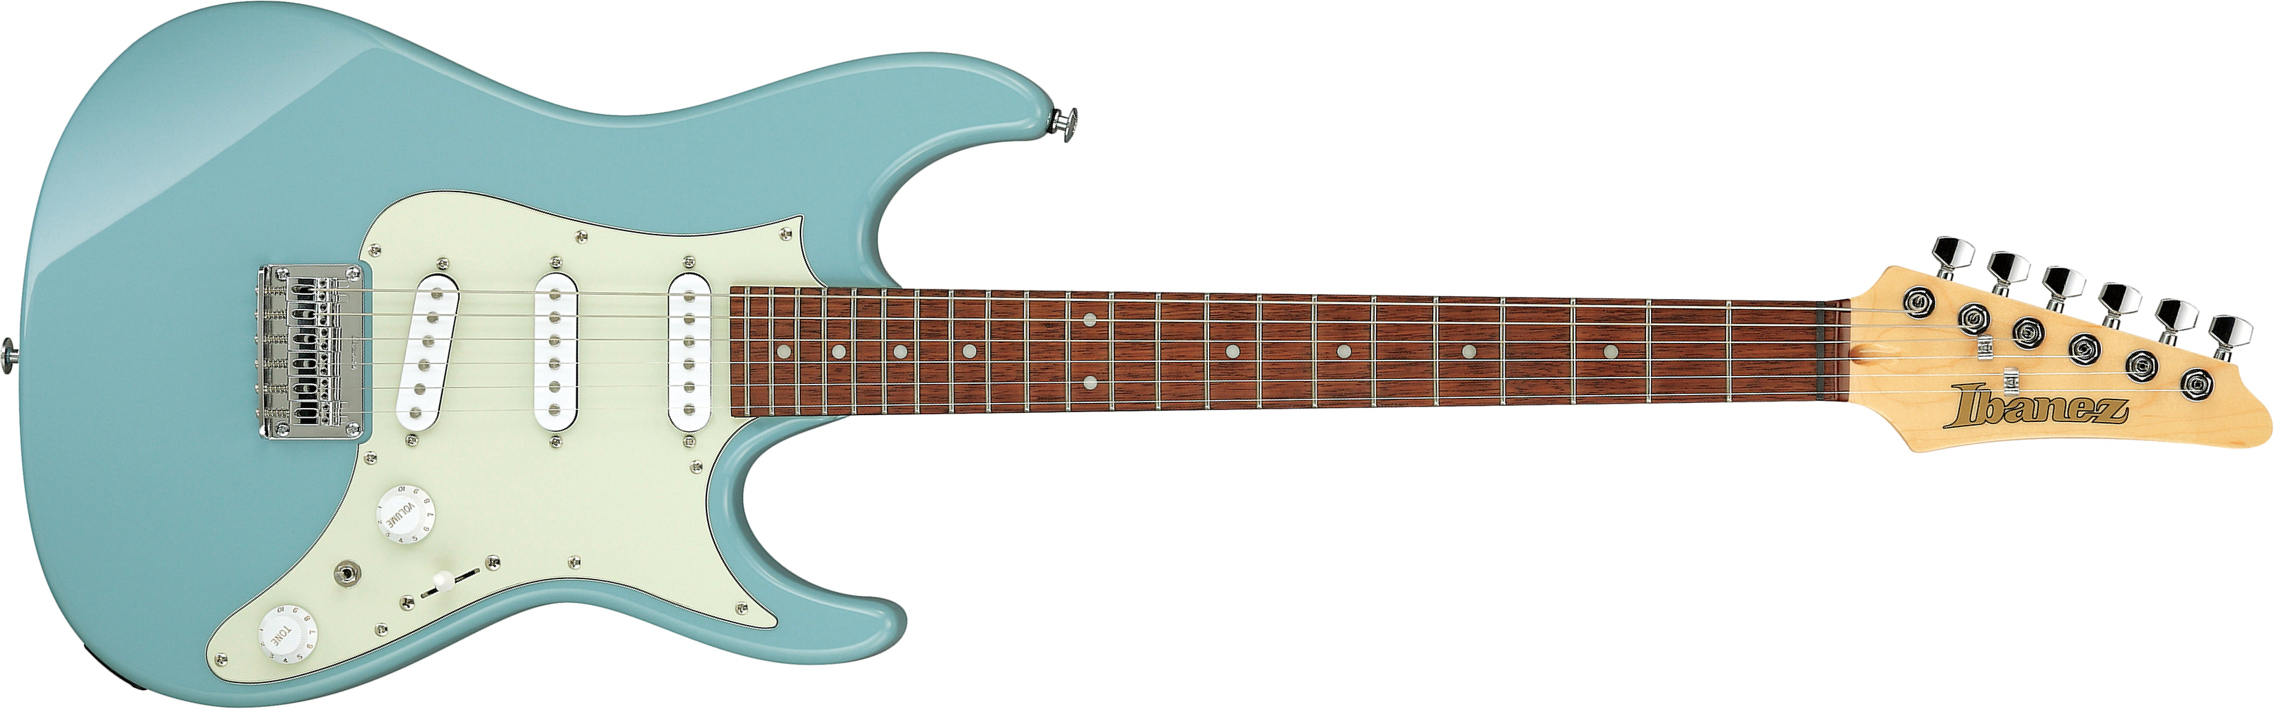 Ibanez Azes31 Prb Standard 3s Trem Jat - Purist Blue - Guitarra eléctrica con forma de str. - Main picture